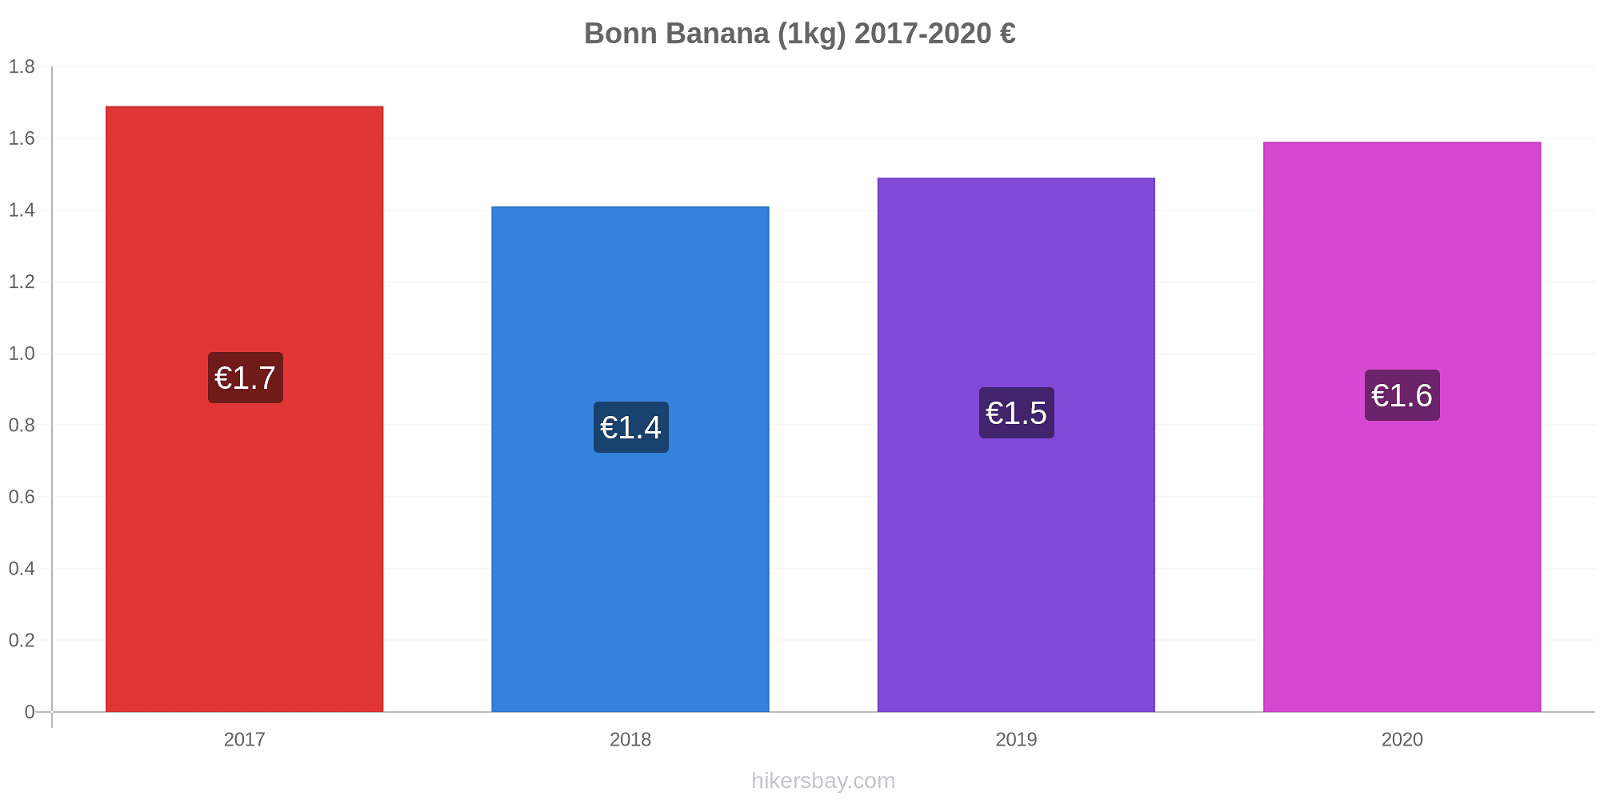 Bonn modificări de preț Banana (1kg) hikersbay.com